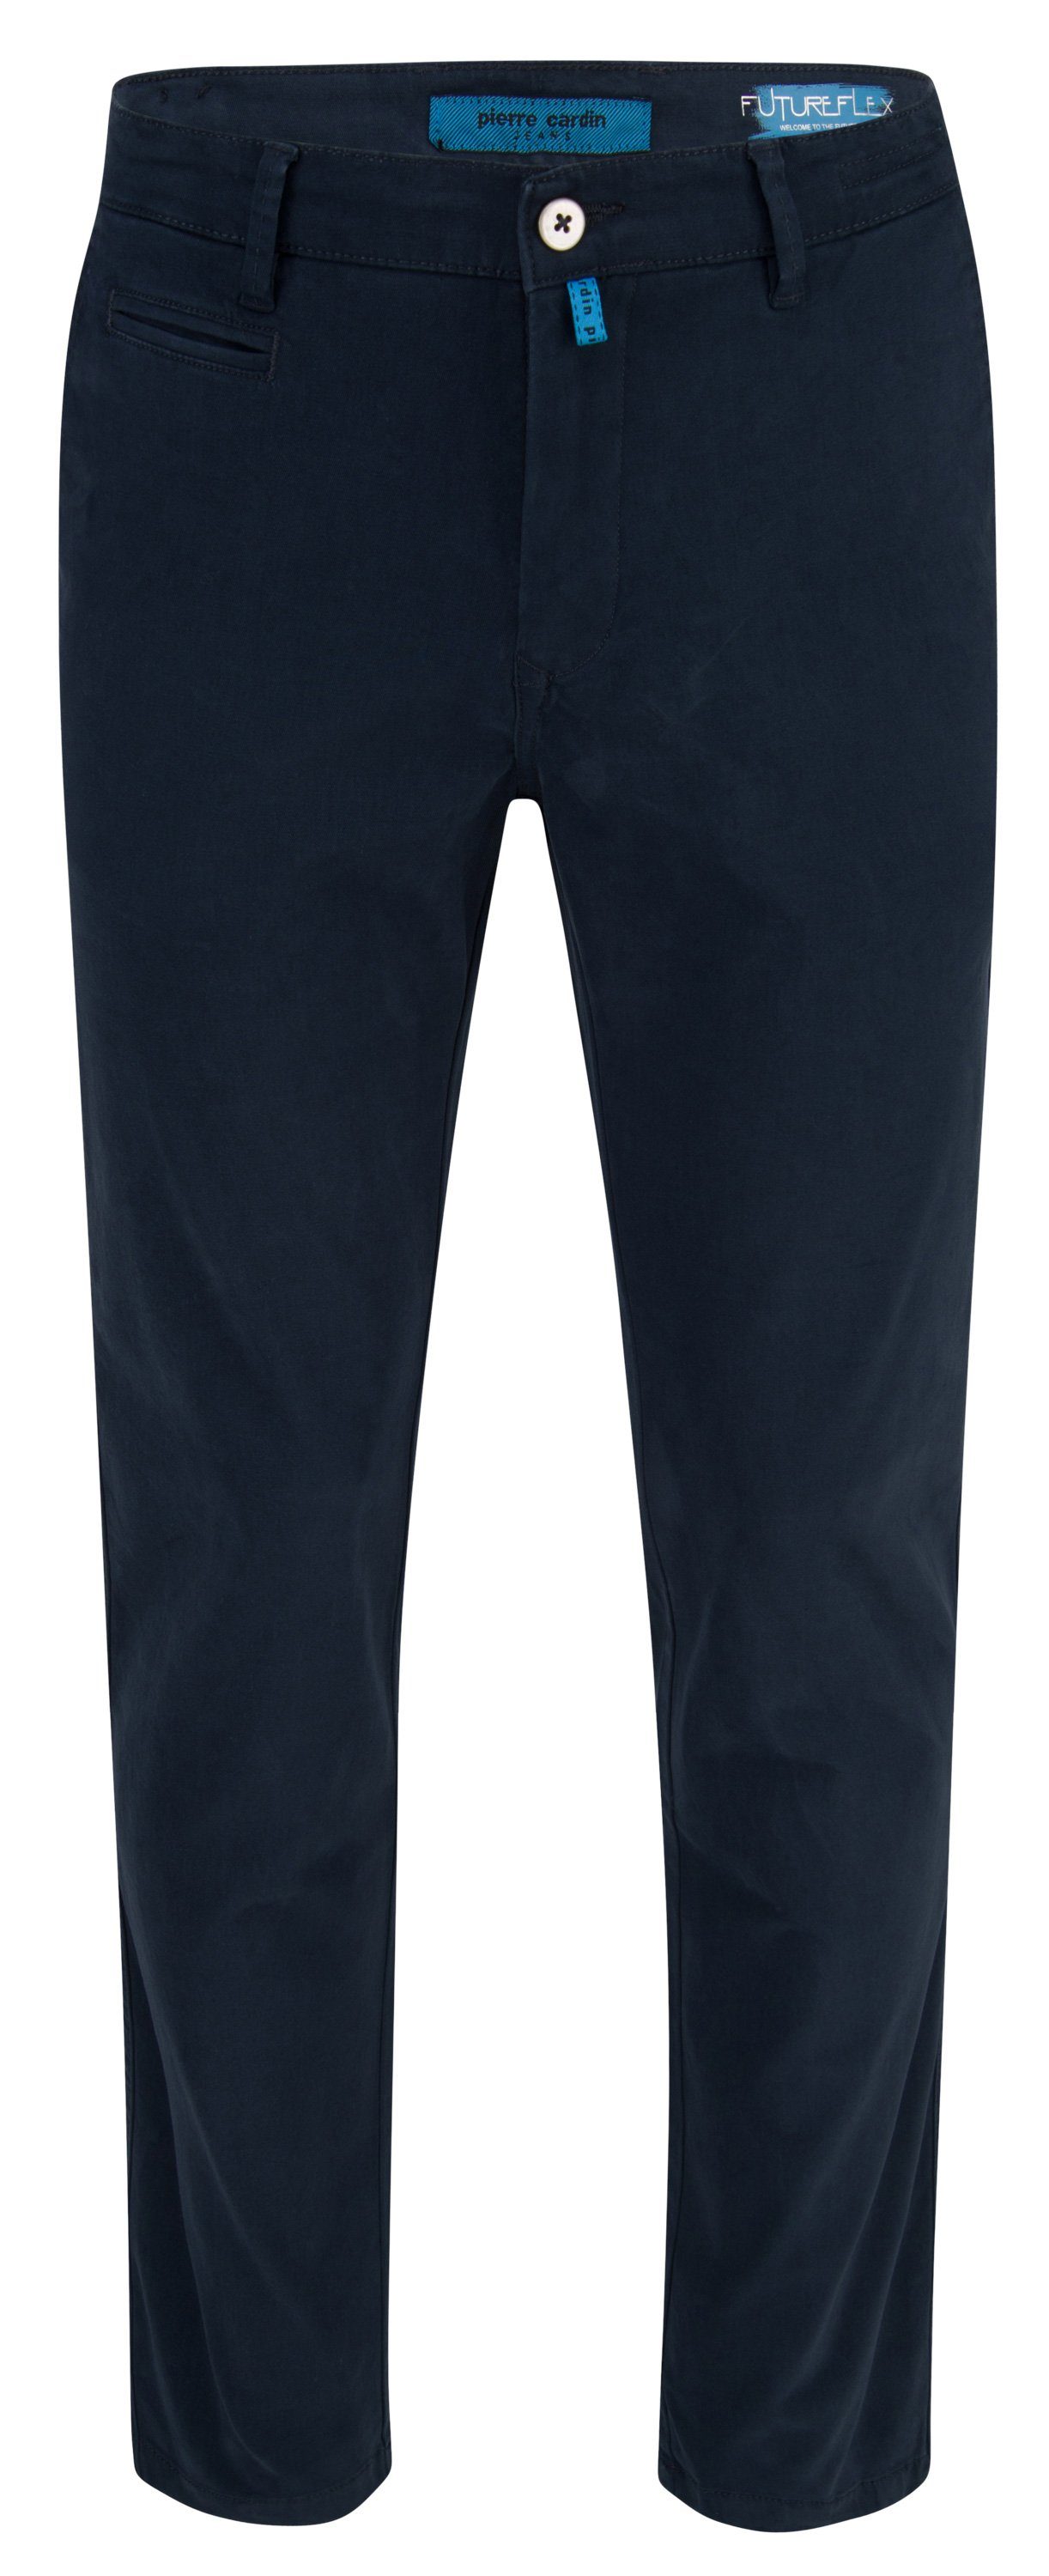 Pierre Cardin 5-Pocket-Jeans PIERRE CARDIN FUTUREFLEX CHINO blue 33757 2233.68